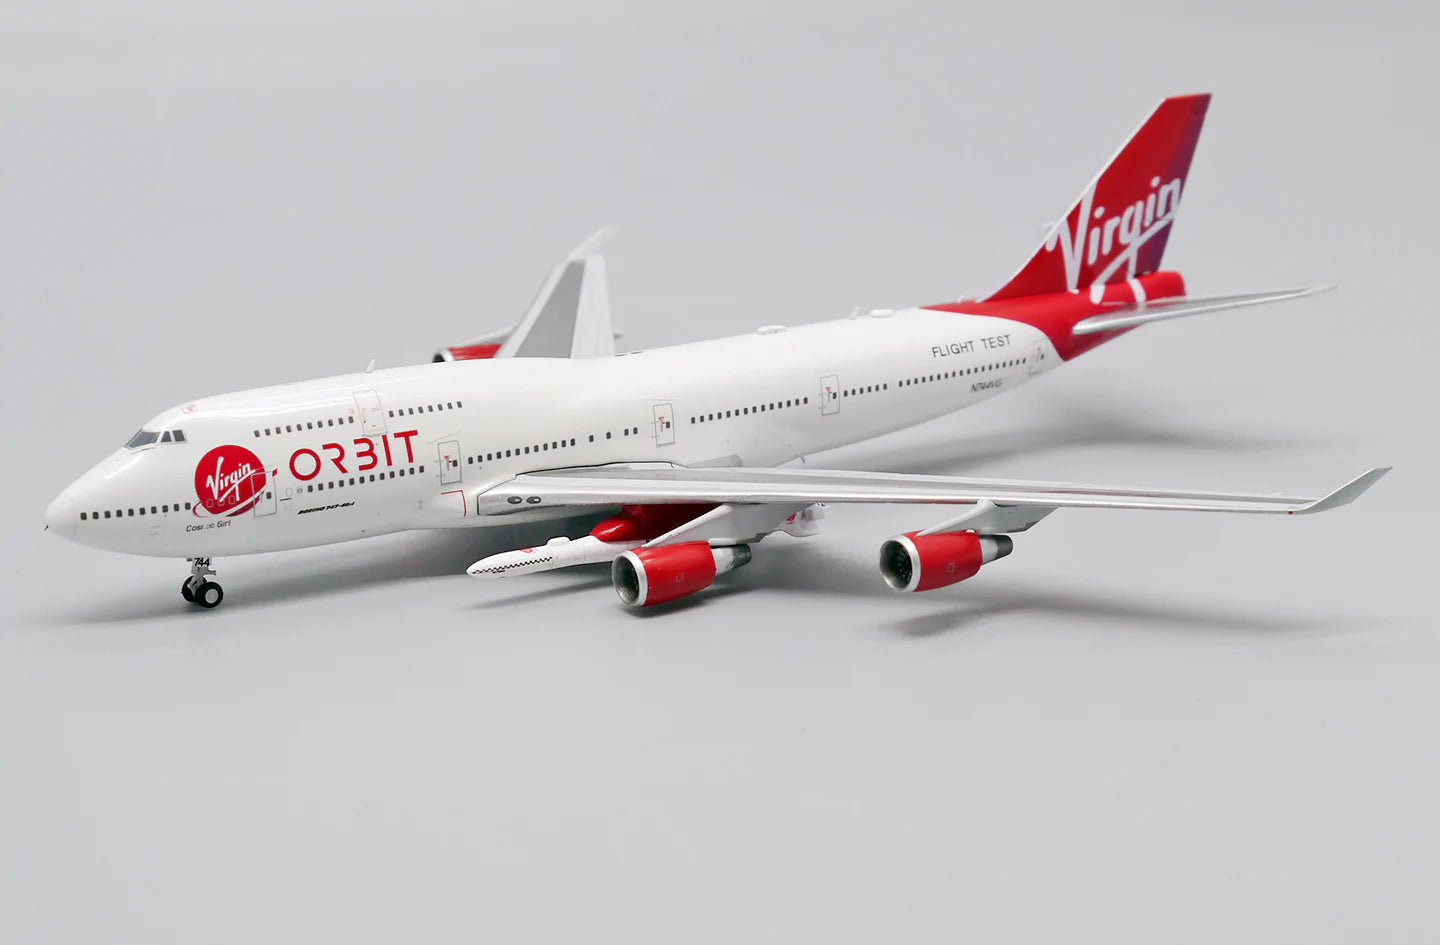 JC Wings XX40036 1:400 Virgin Orbit Boeing 747-400